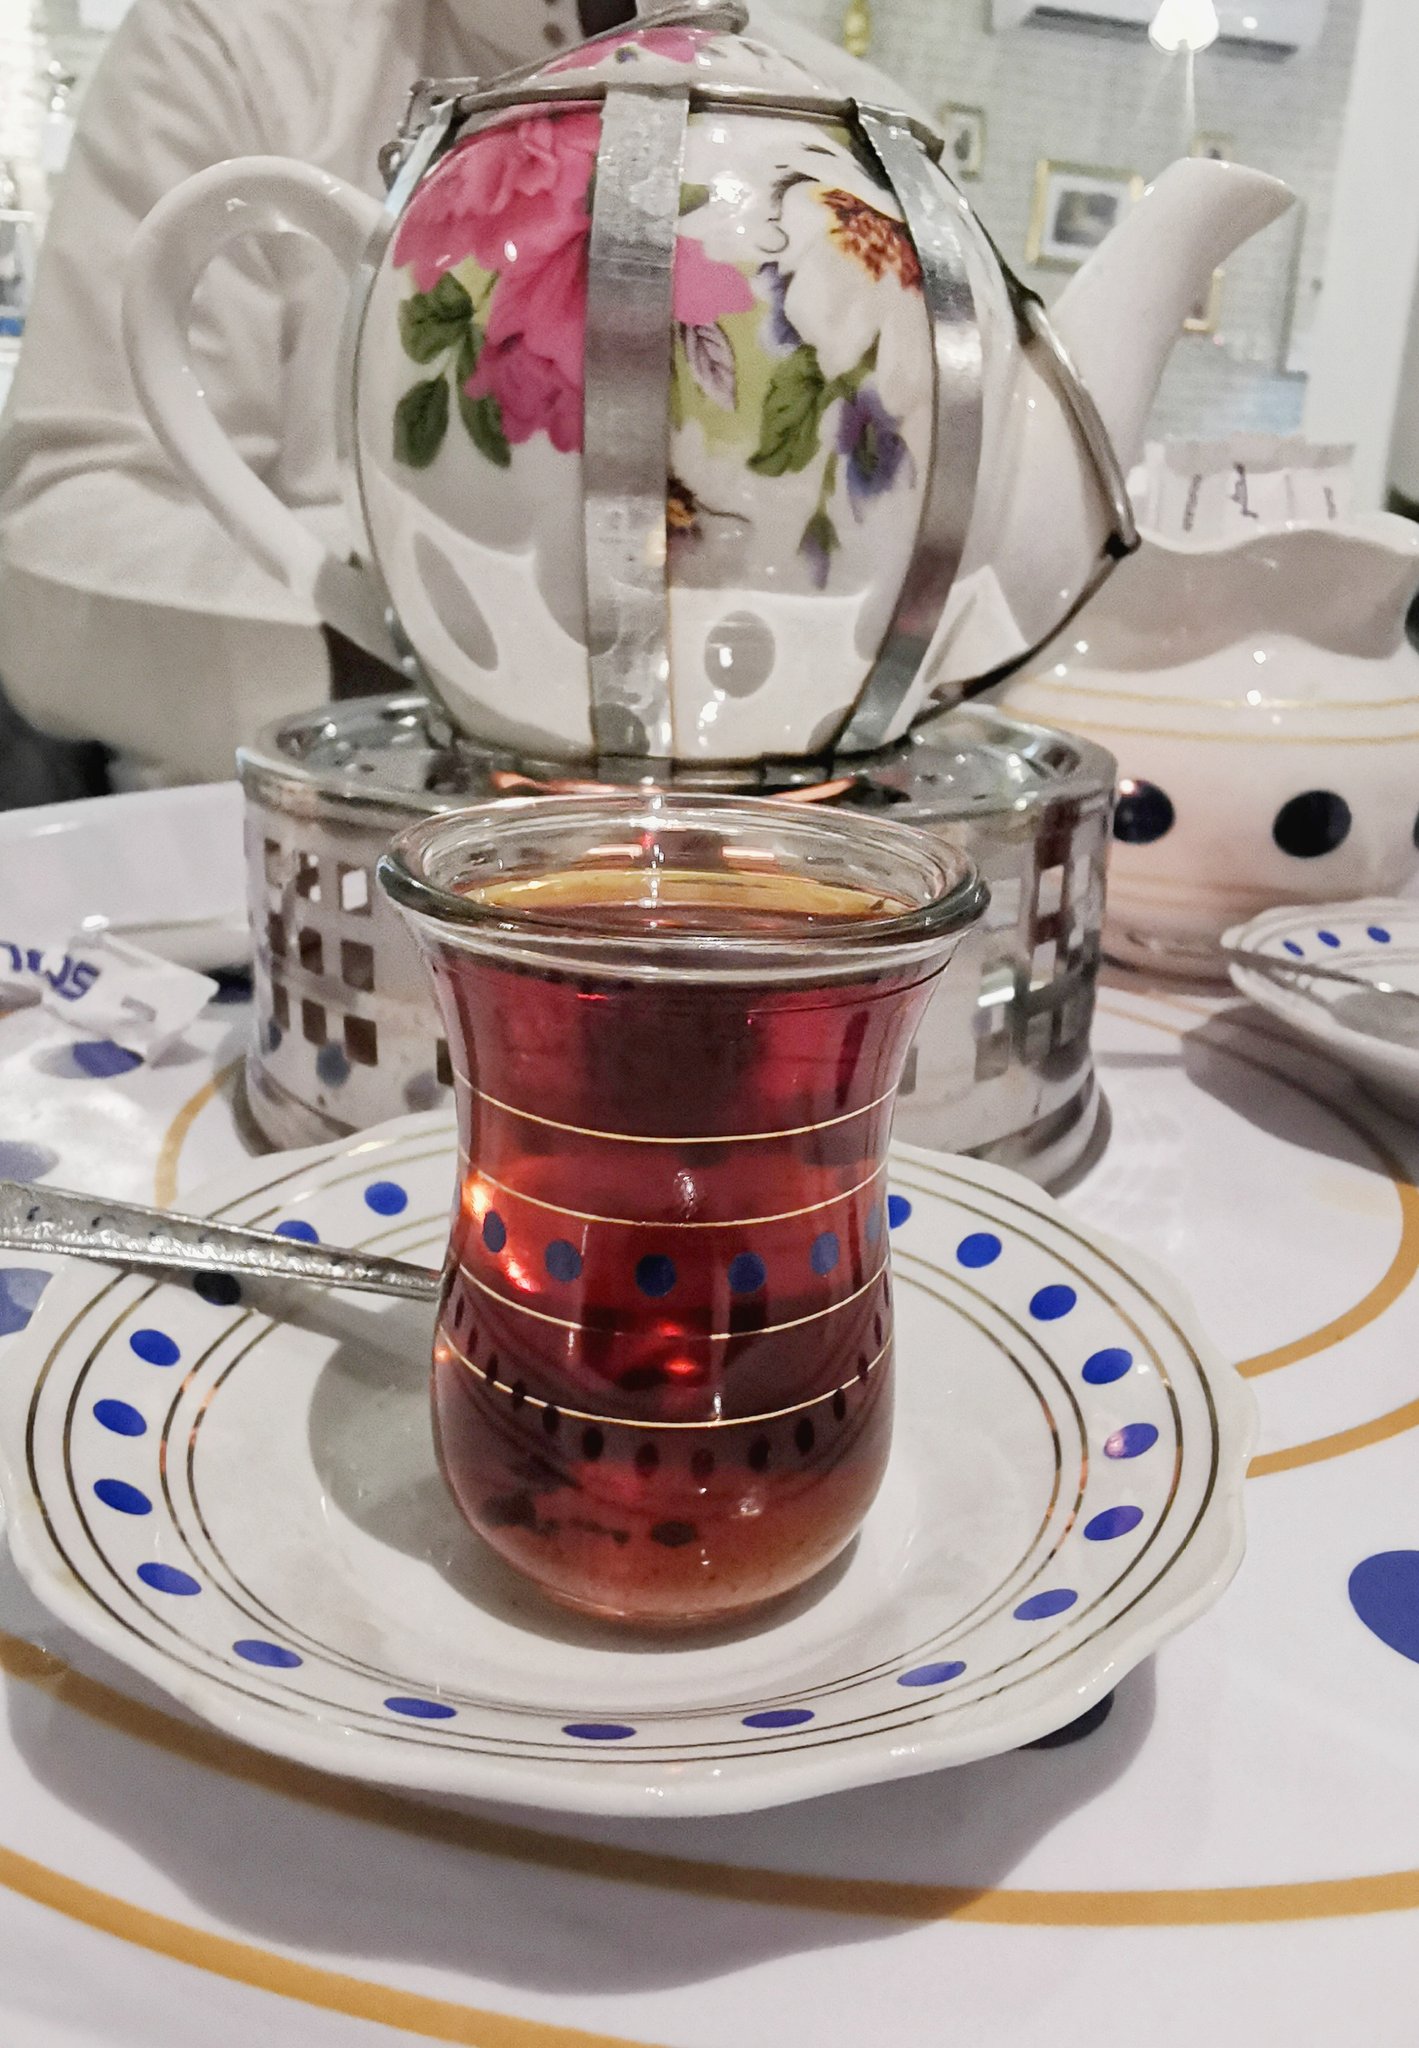 فاهم on Twitter: "استكانة شاي بملامح عراقية في @karambaghdadksa يحليها وجود  @saad_4011 https://t.co/otfAOKKp4X" / Twitter